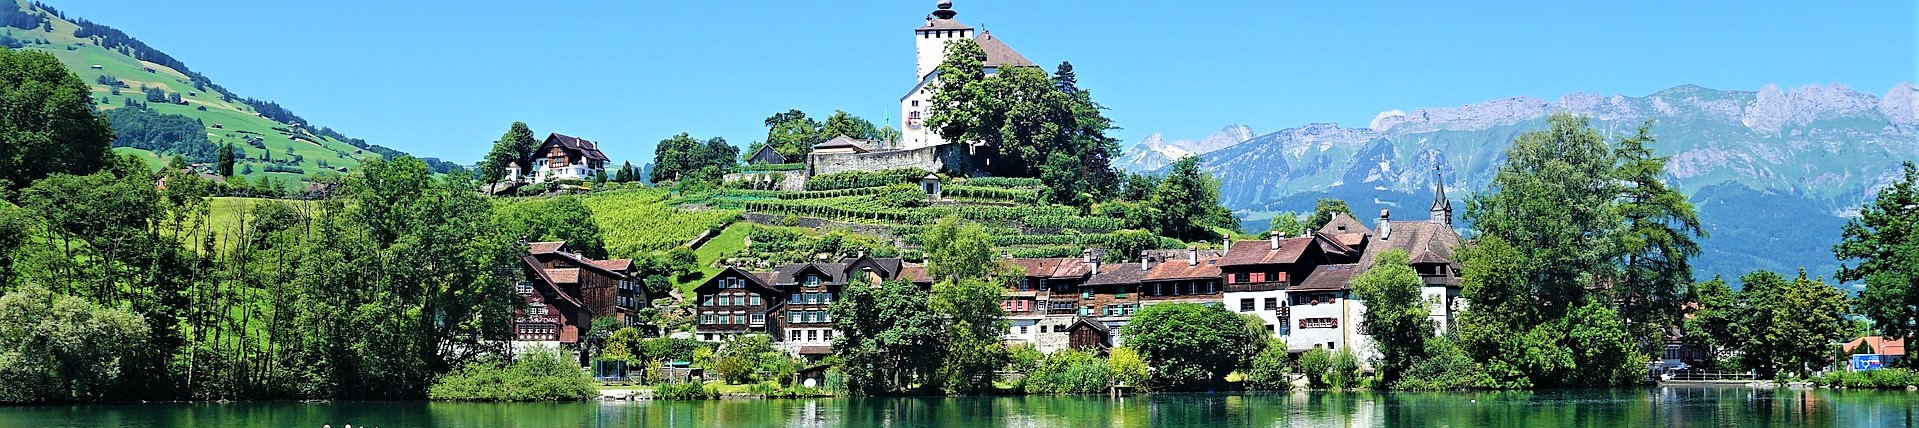 East Switzerland Region HOTEL|東スイス地方 ホテル